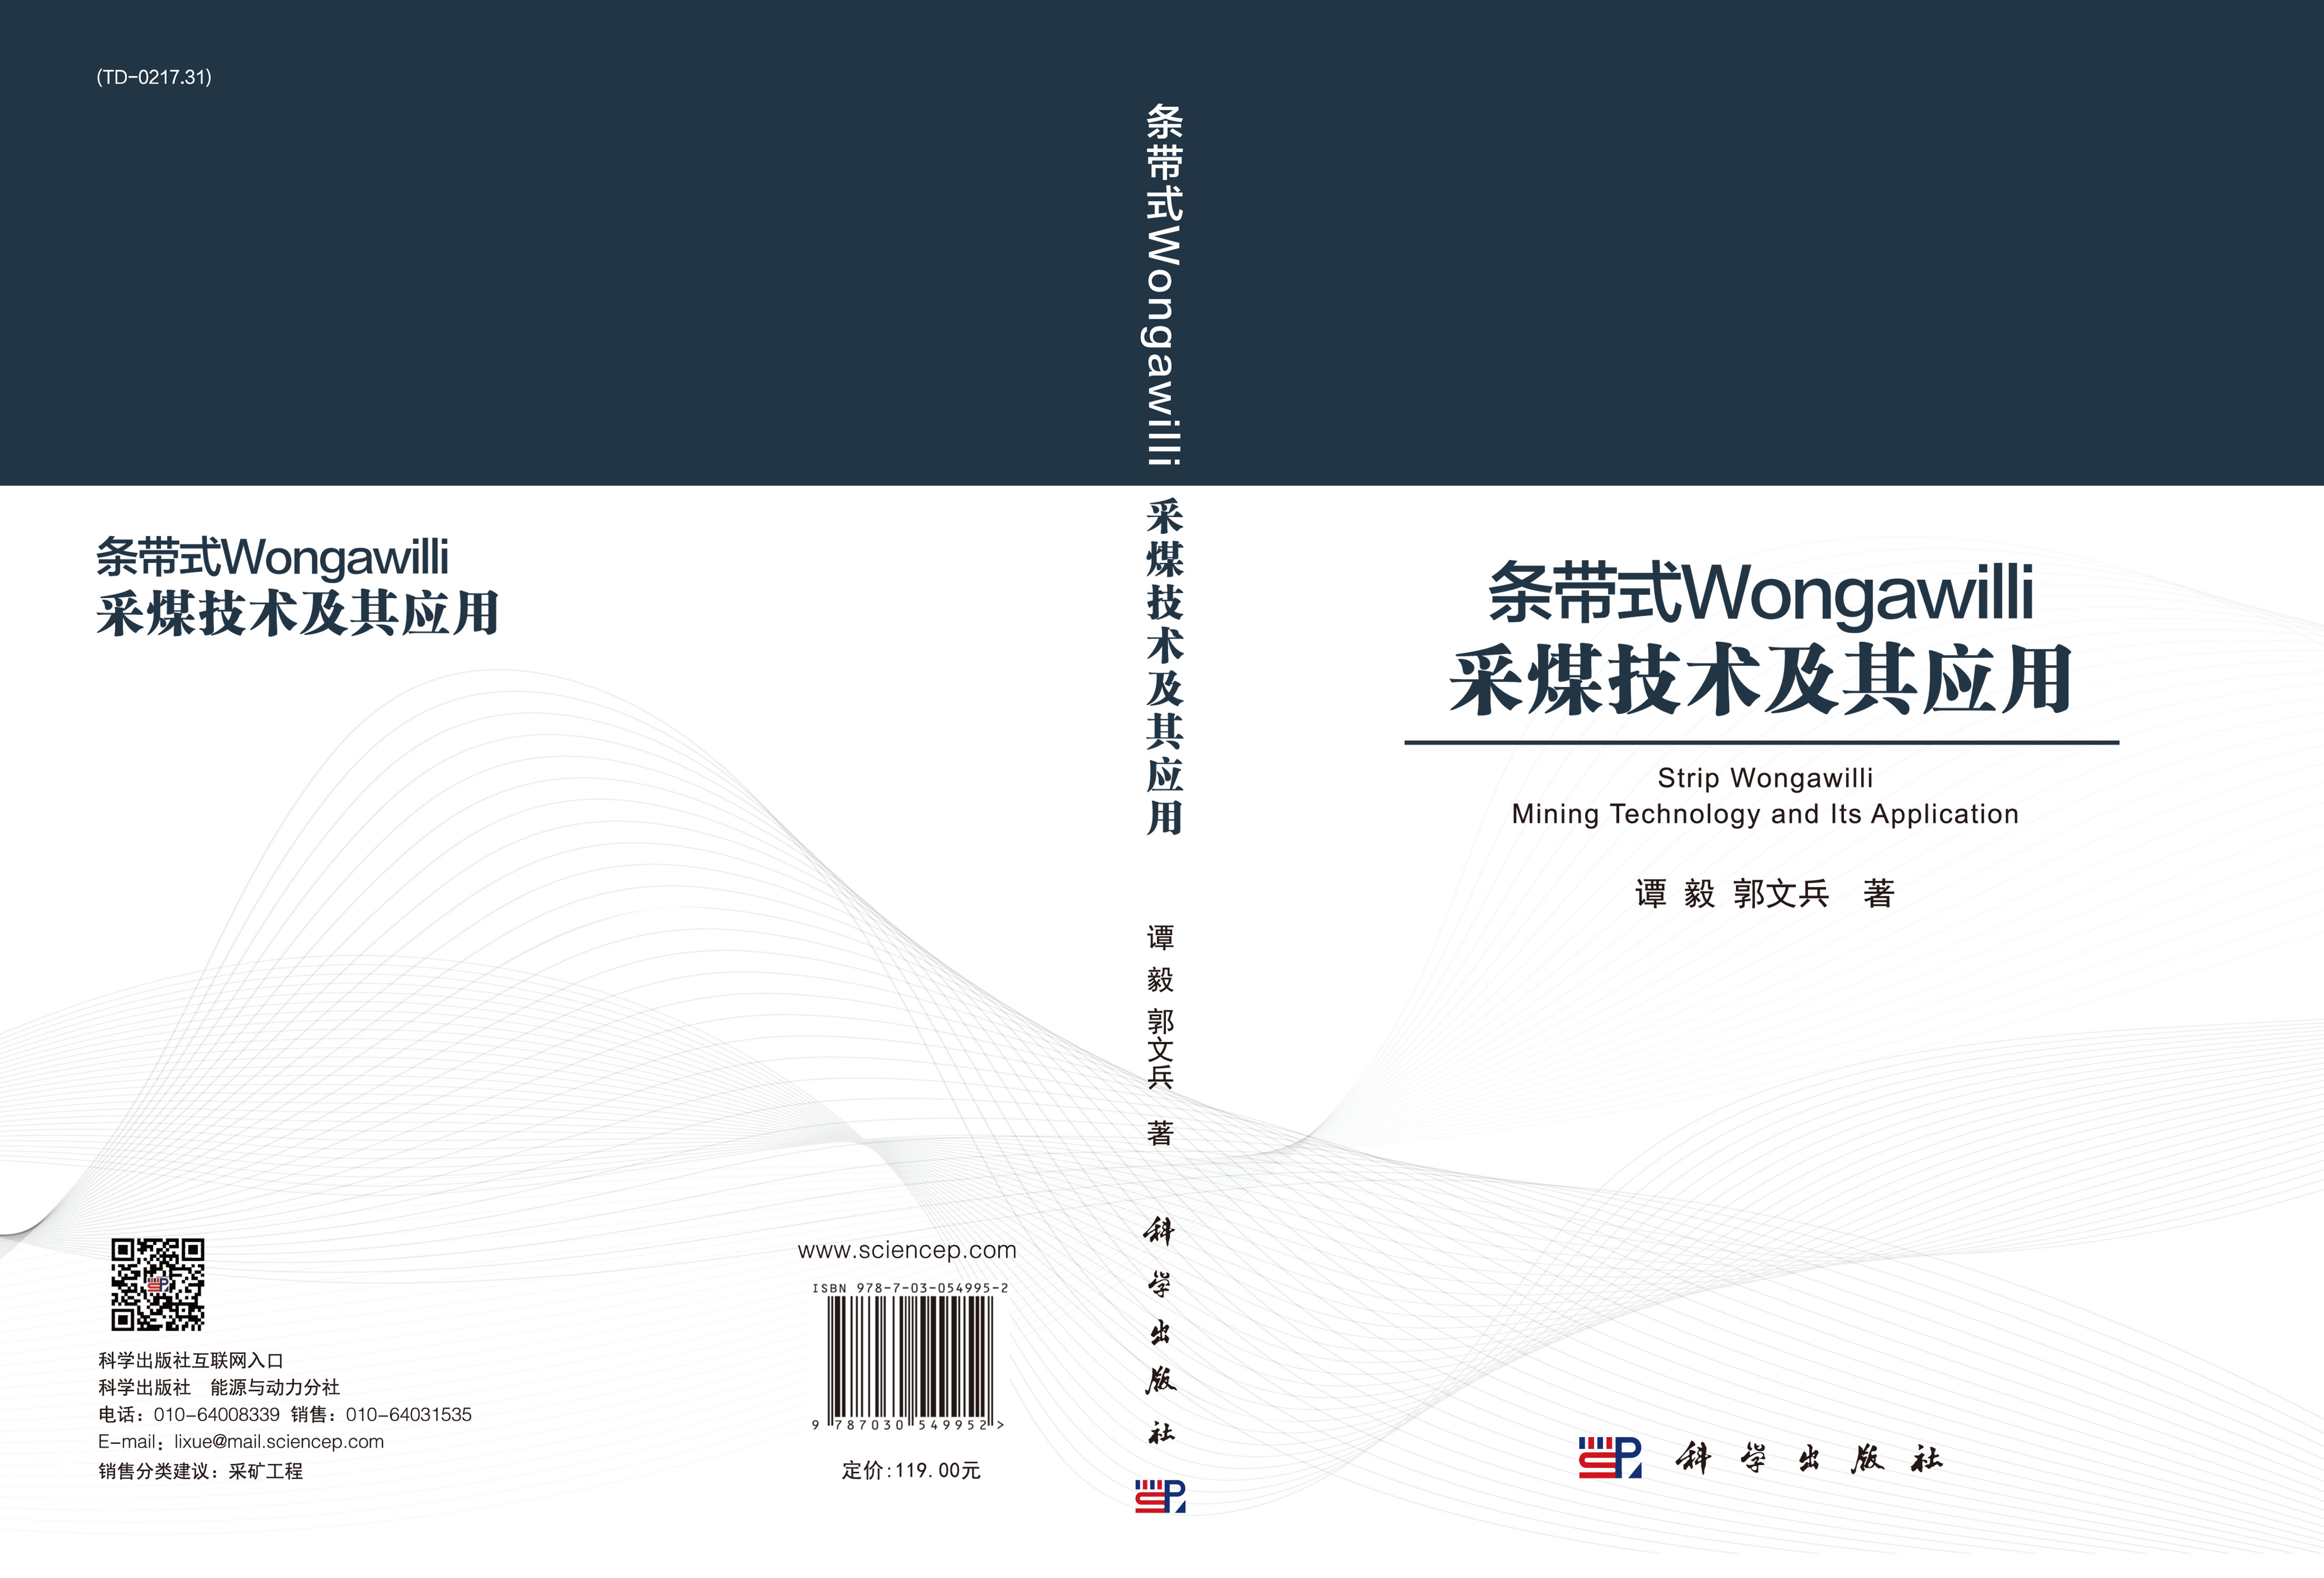 条带式Wongawilli采煤技术及其应用